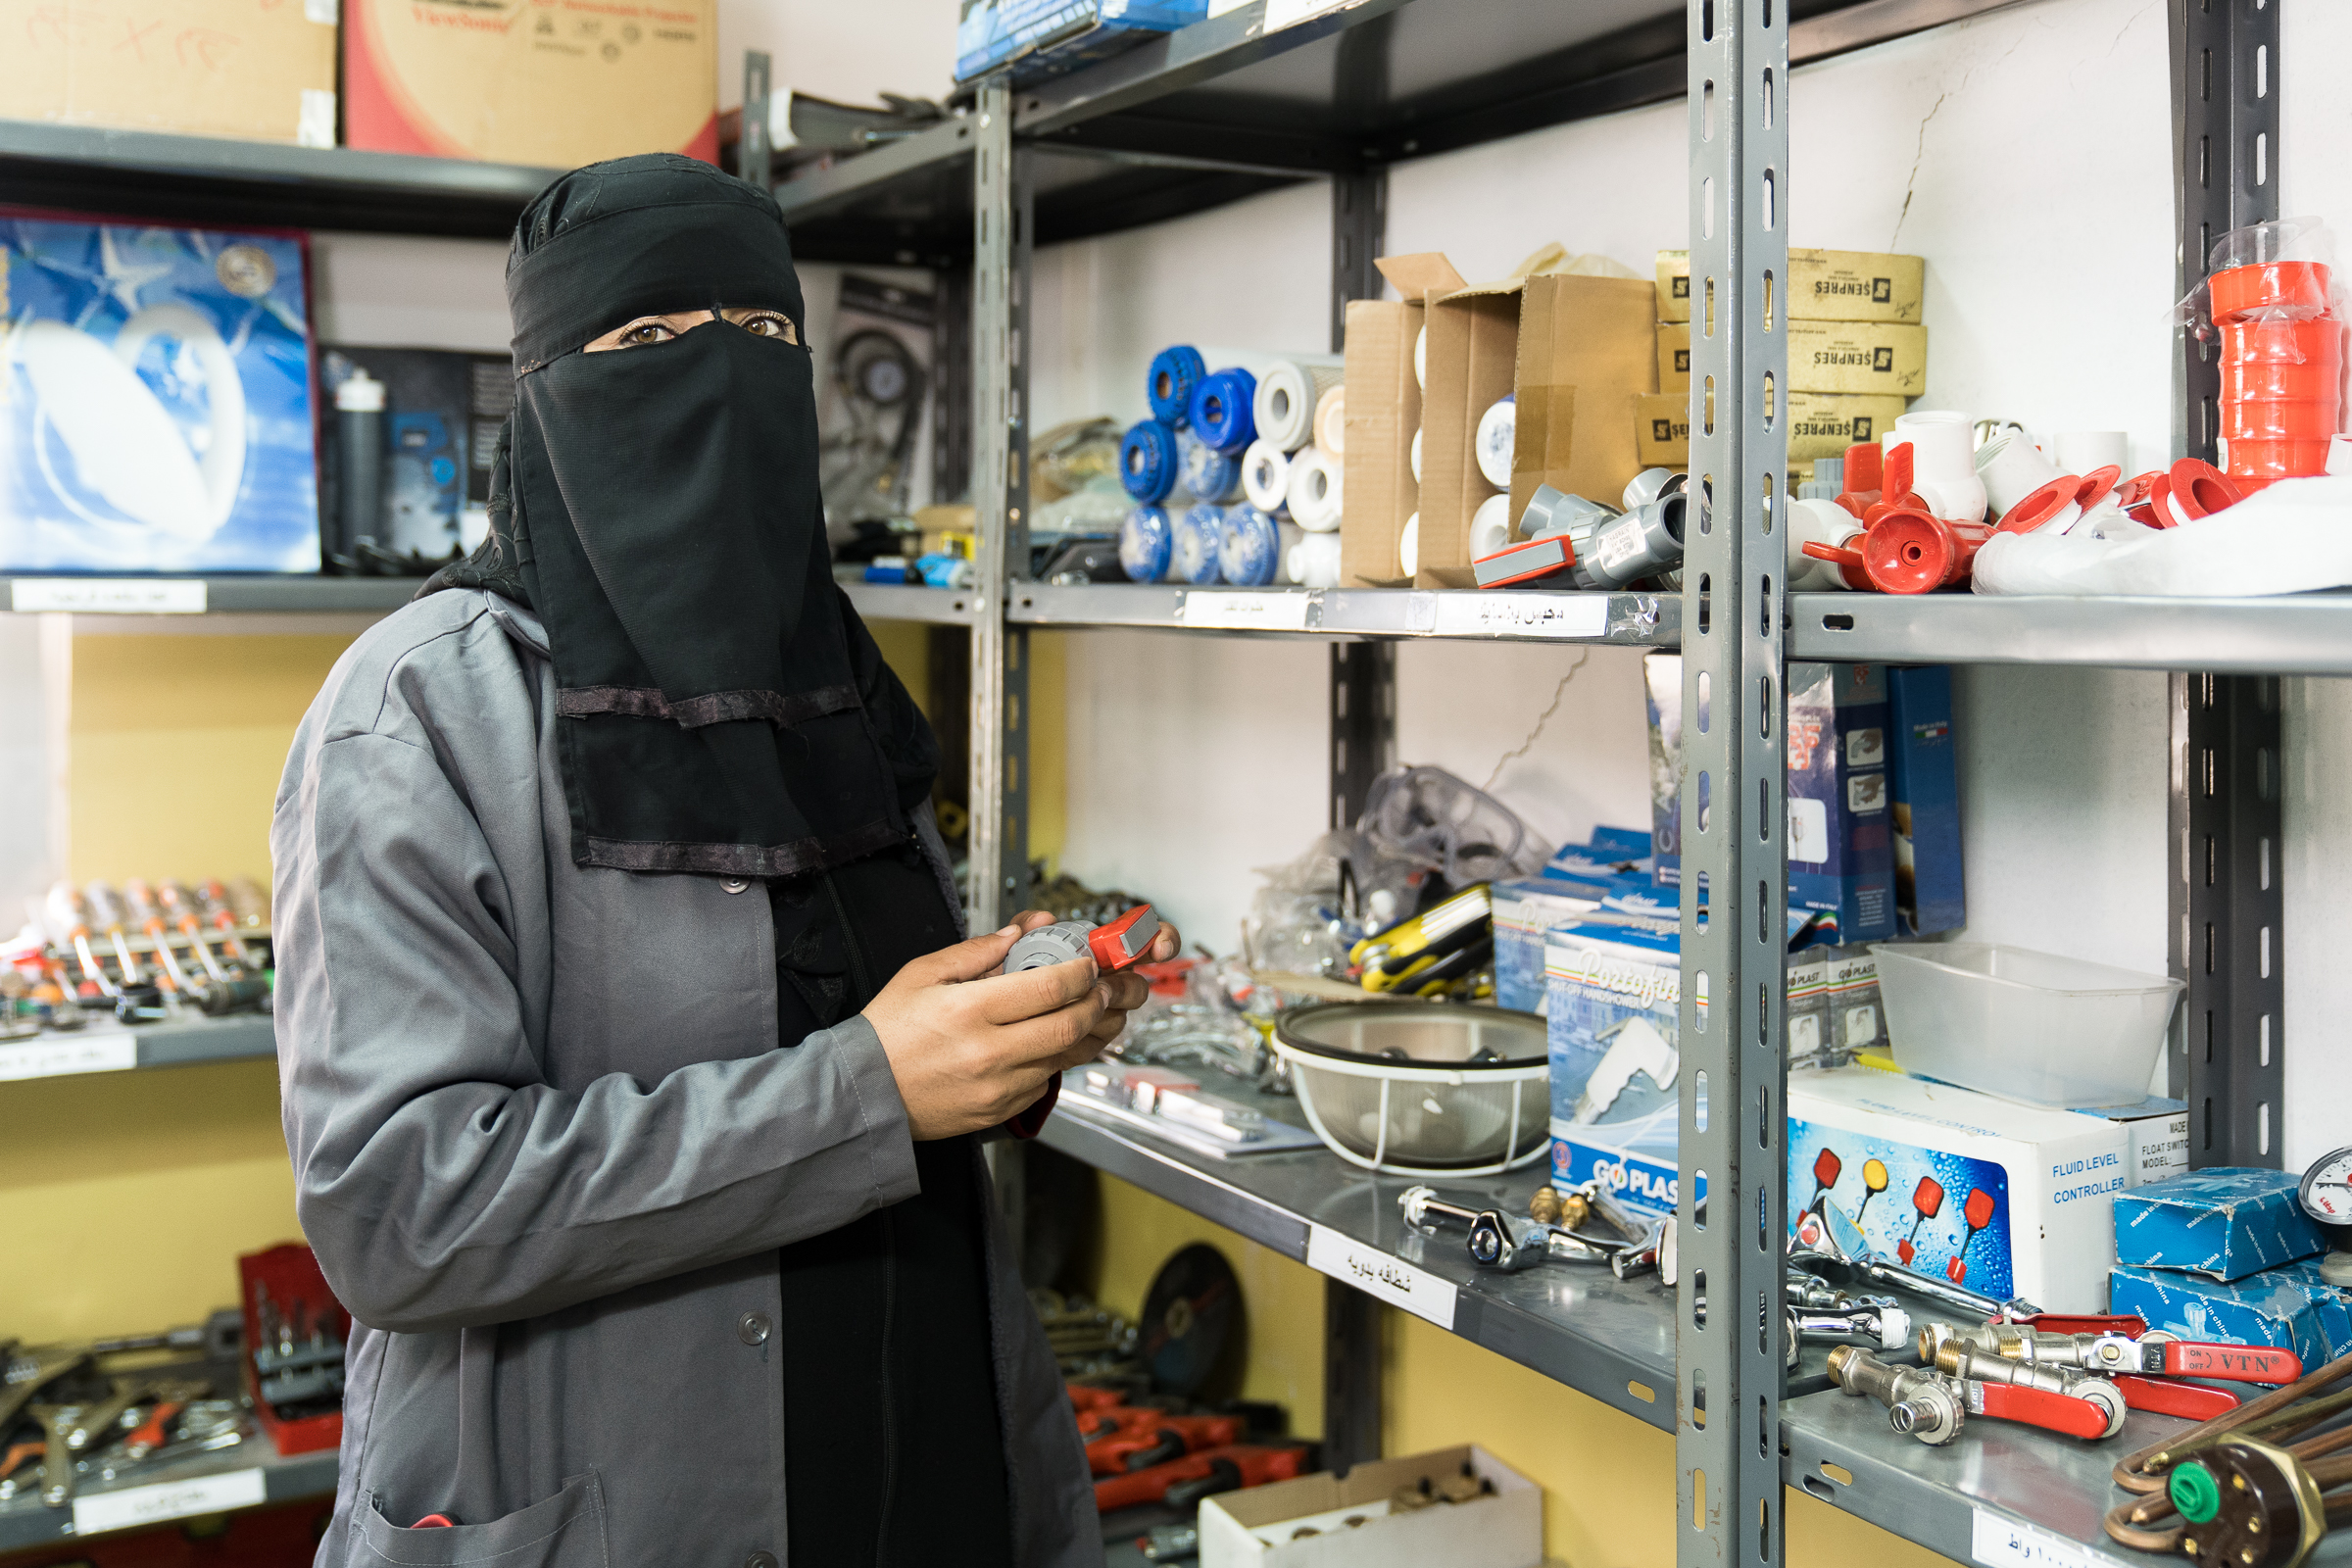 Die ausgebildete Klempnerin Fatima Muhammad Al-Mar’I in Jordanien in einer Werkstatt